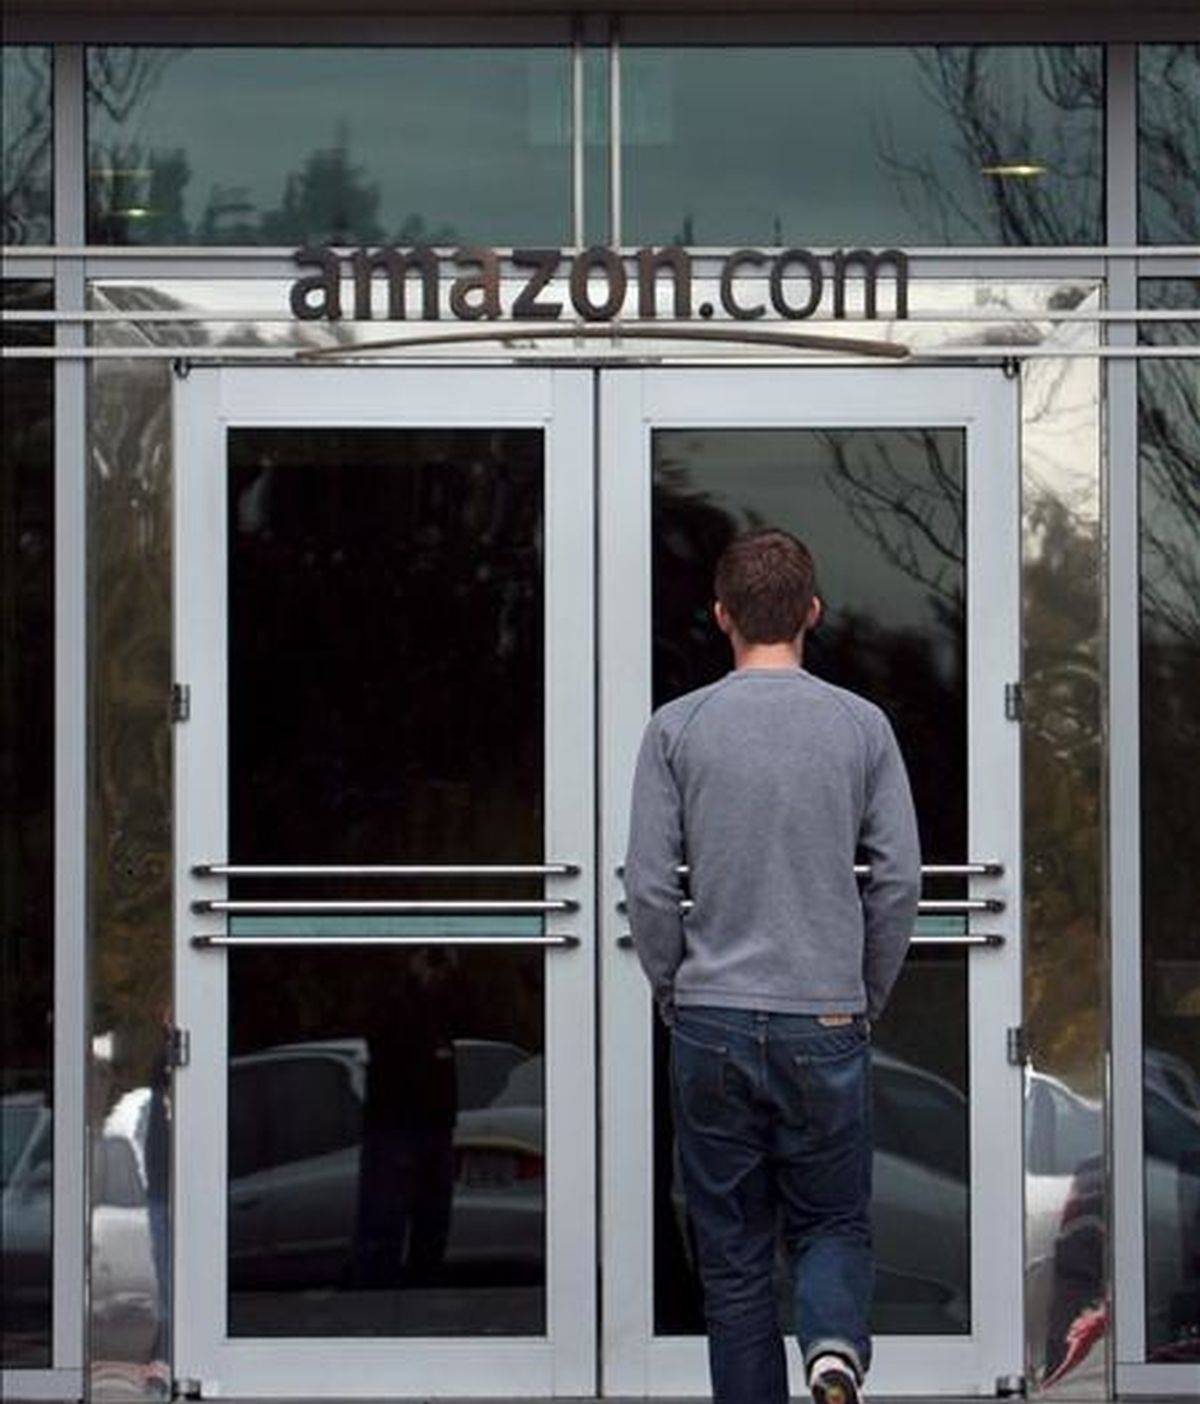 Para el próximo trimestre, Amazon.com prevé ingresar entre 4.300 y 4.750 millones de dólares, lo que supondría un incremento de entre el 6% y el 17% respecto a un año antes. EFE/Archivo